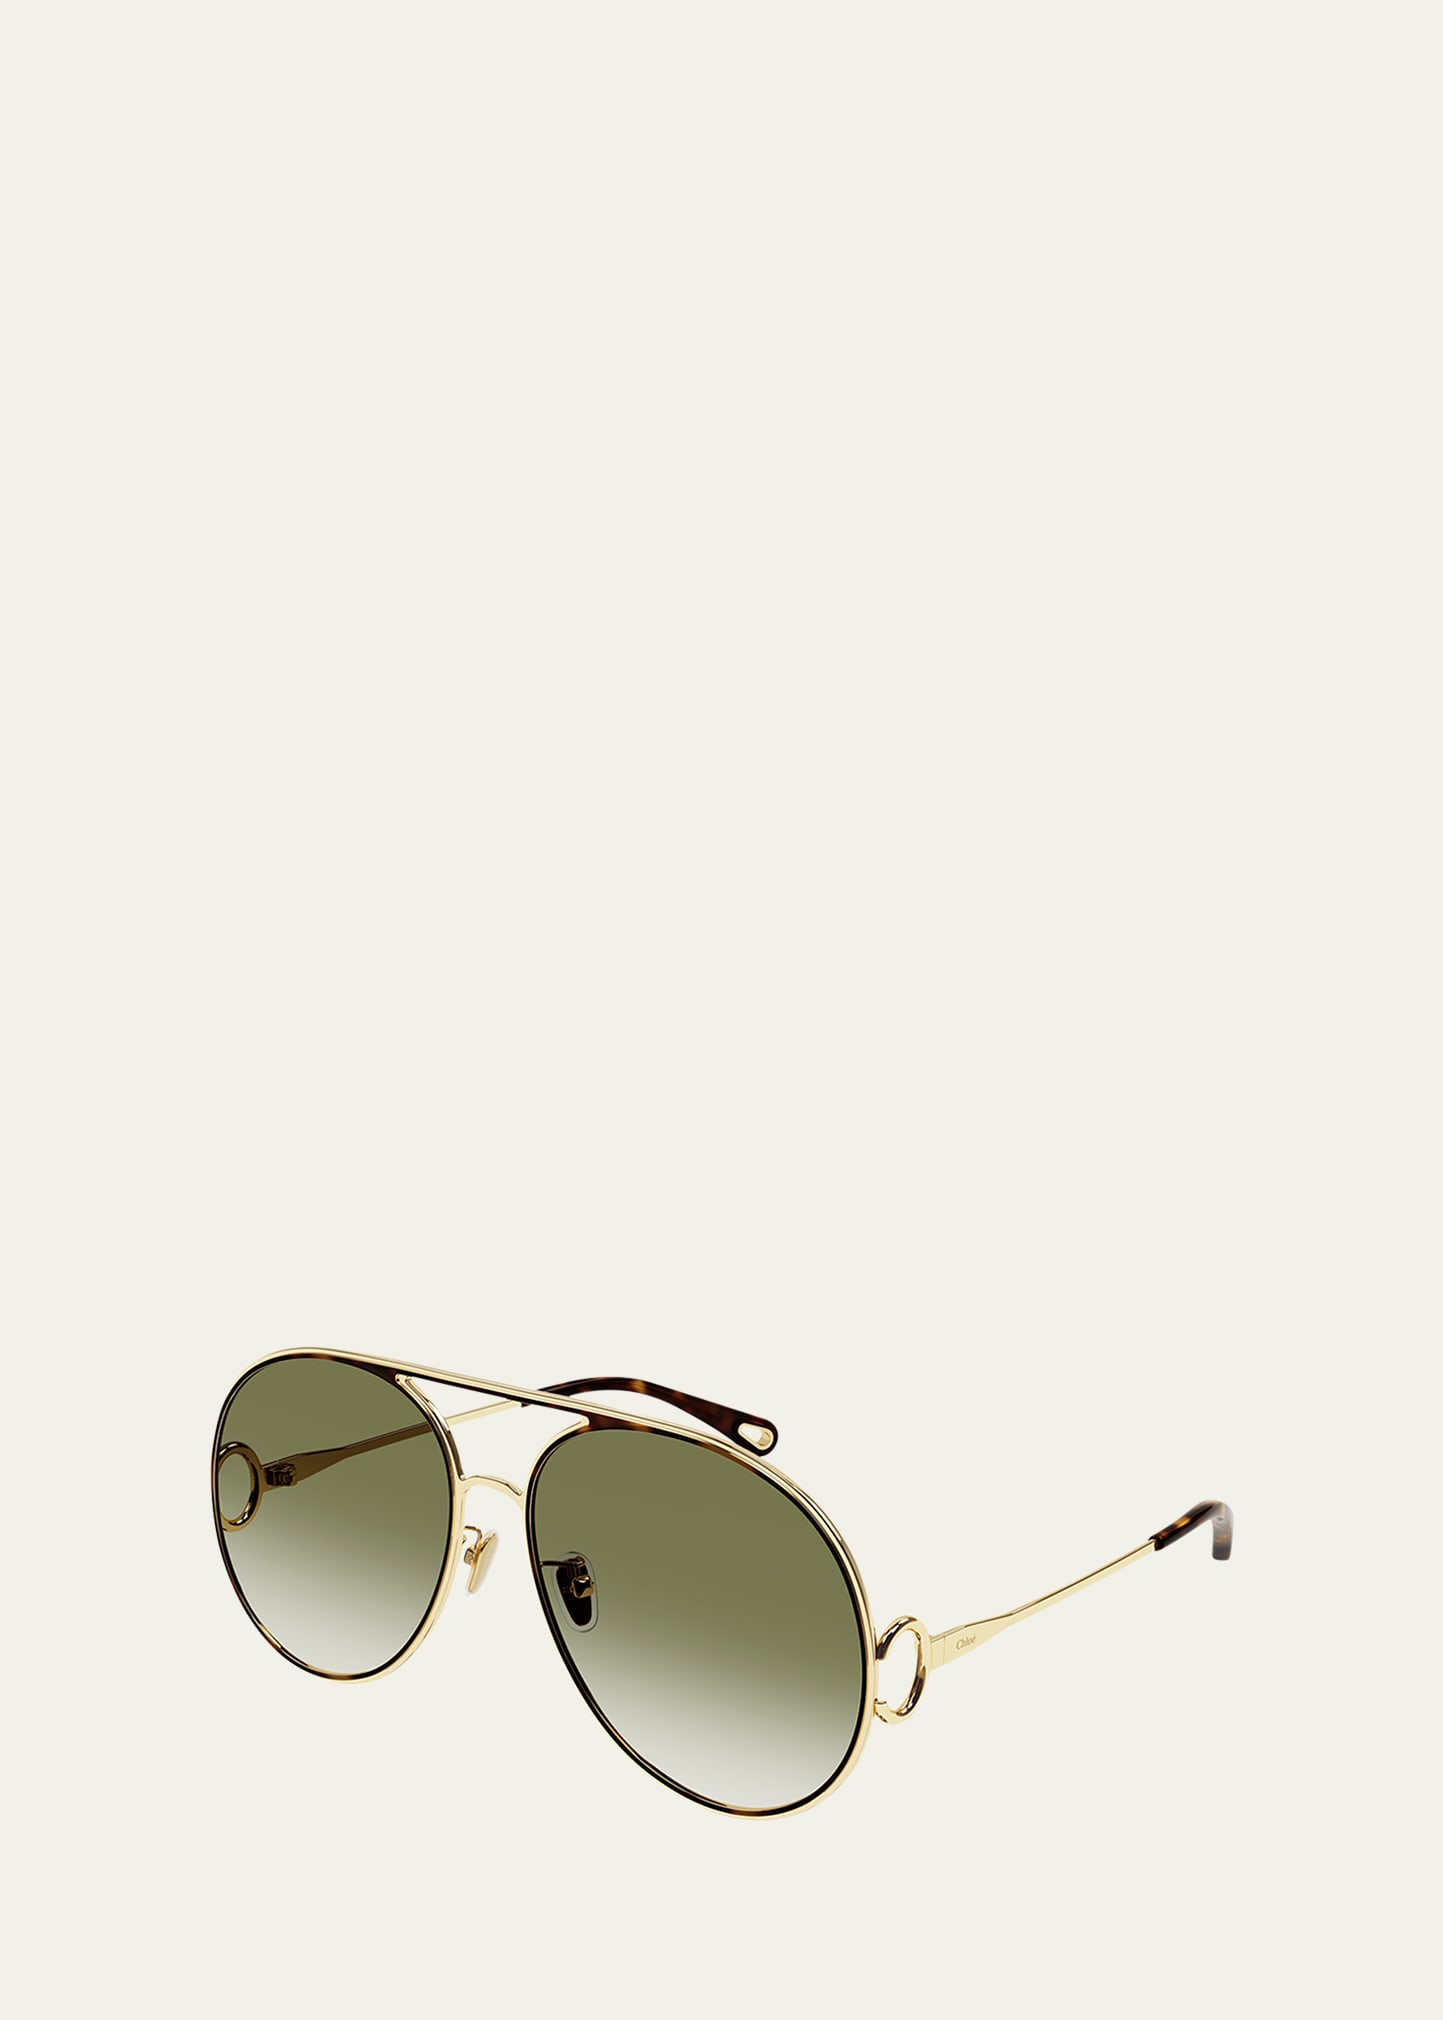 Chloe Golden Tortoiseshell Metal Aviator Sunglasses - Bergdorf Goodman